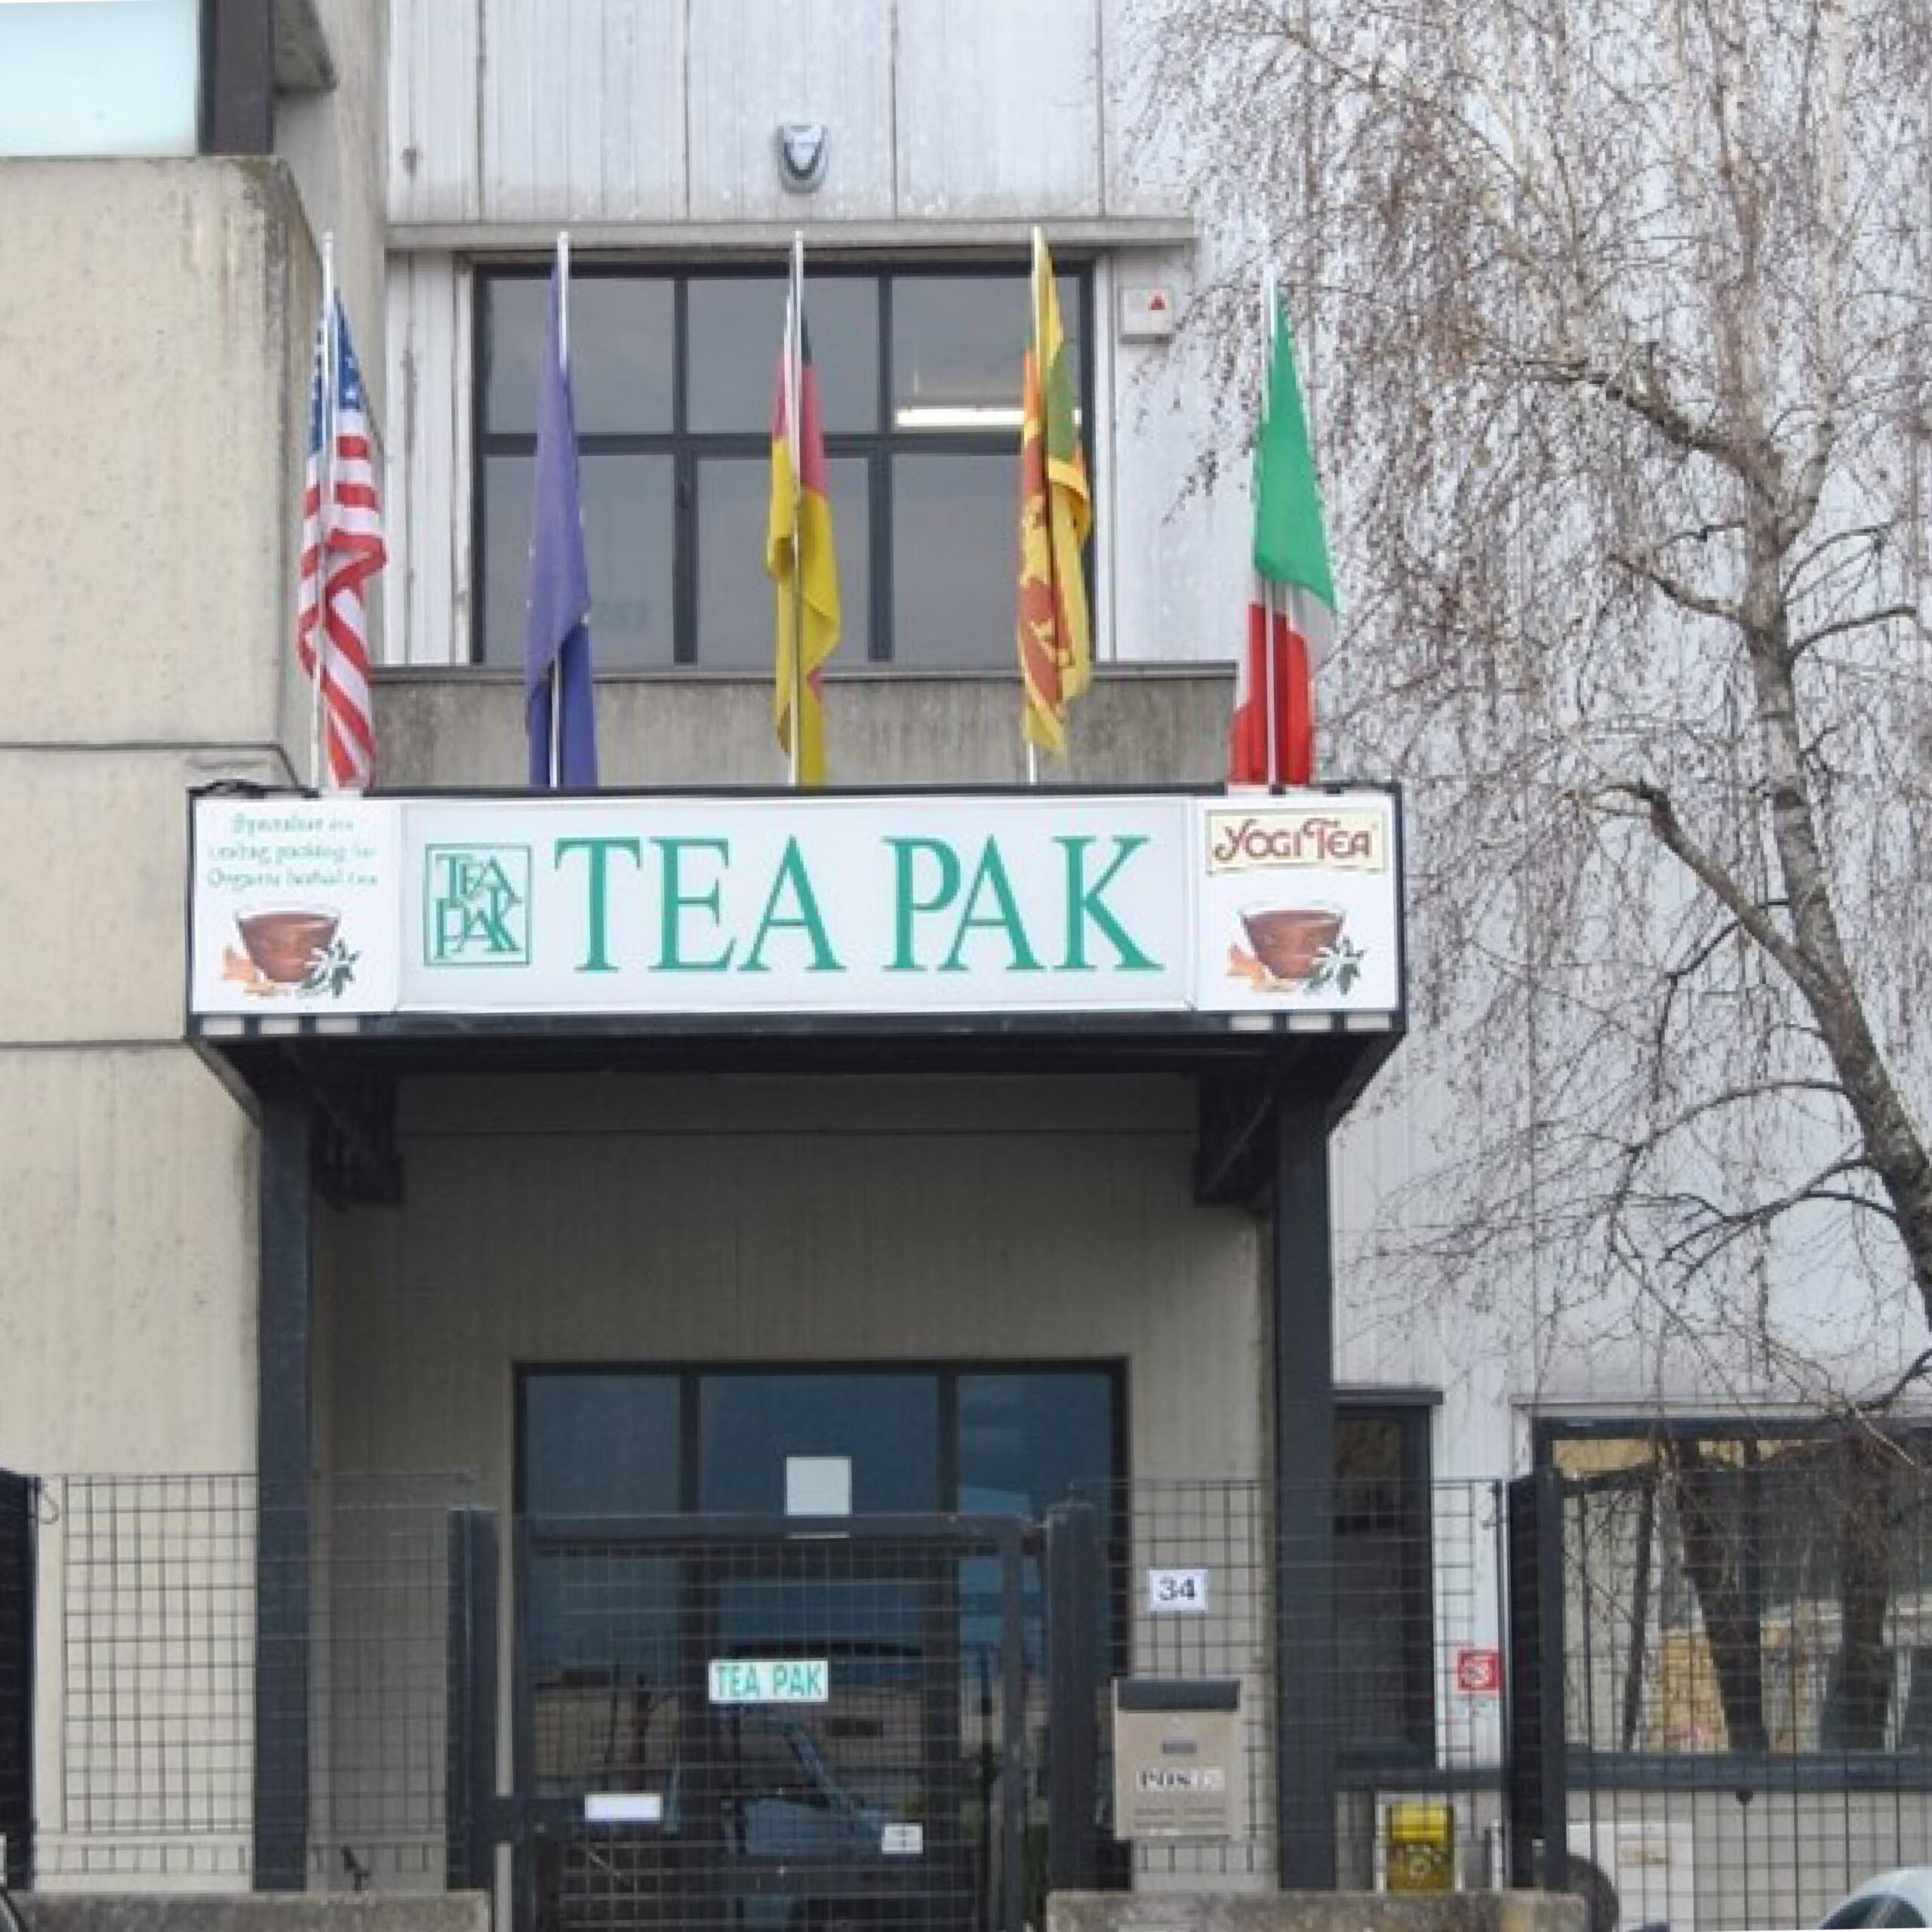 2001 – TeaPak in via Colombarotto